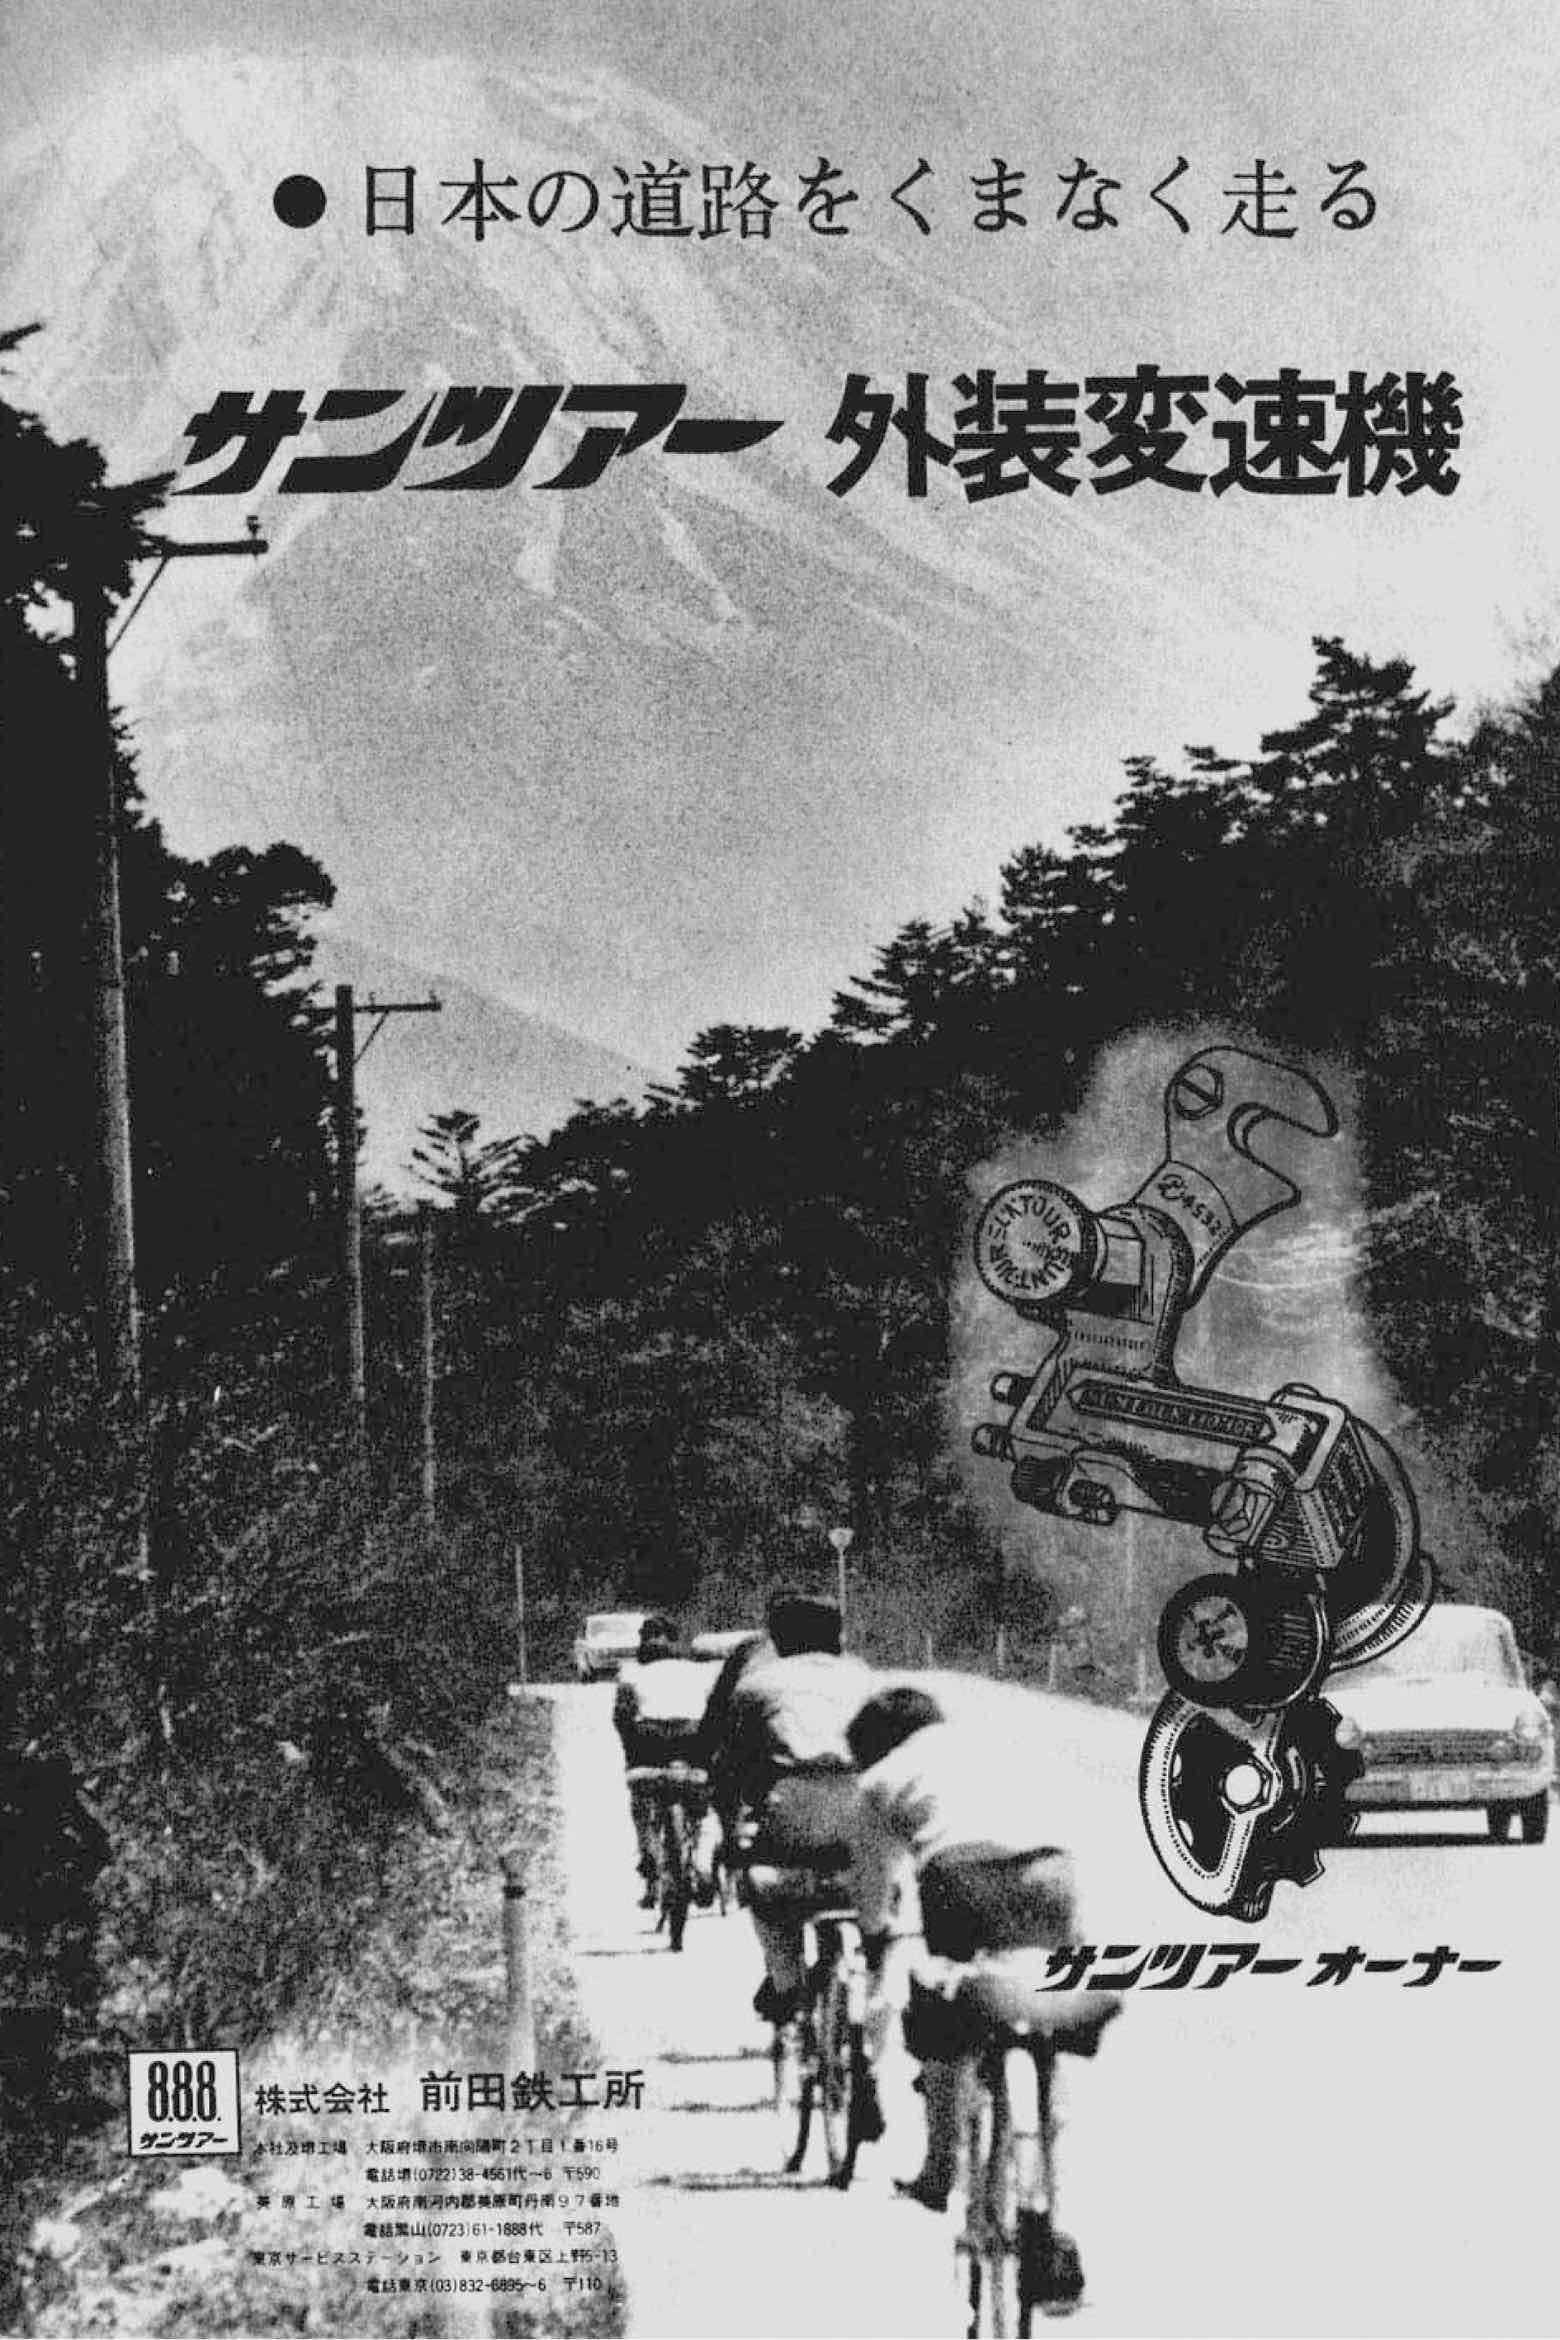 New Cycling October 1969 - SunTour advert main image